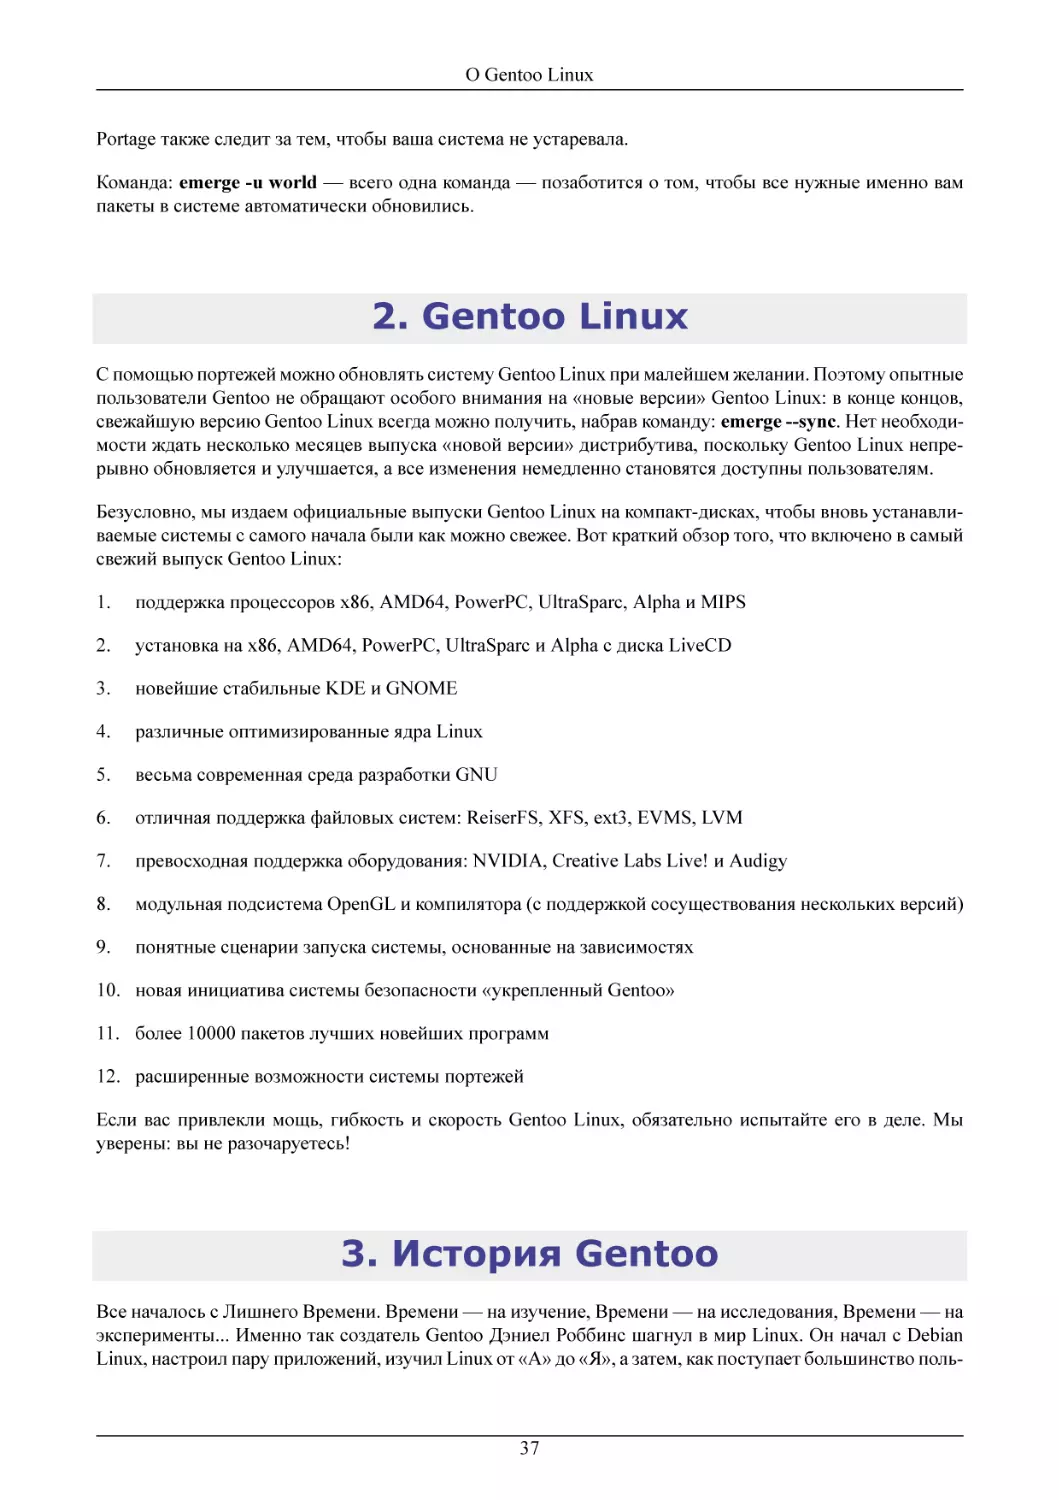 Gentoo Linux
История Gentoo